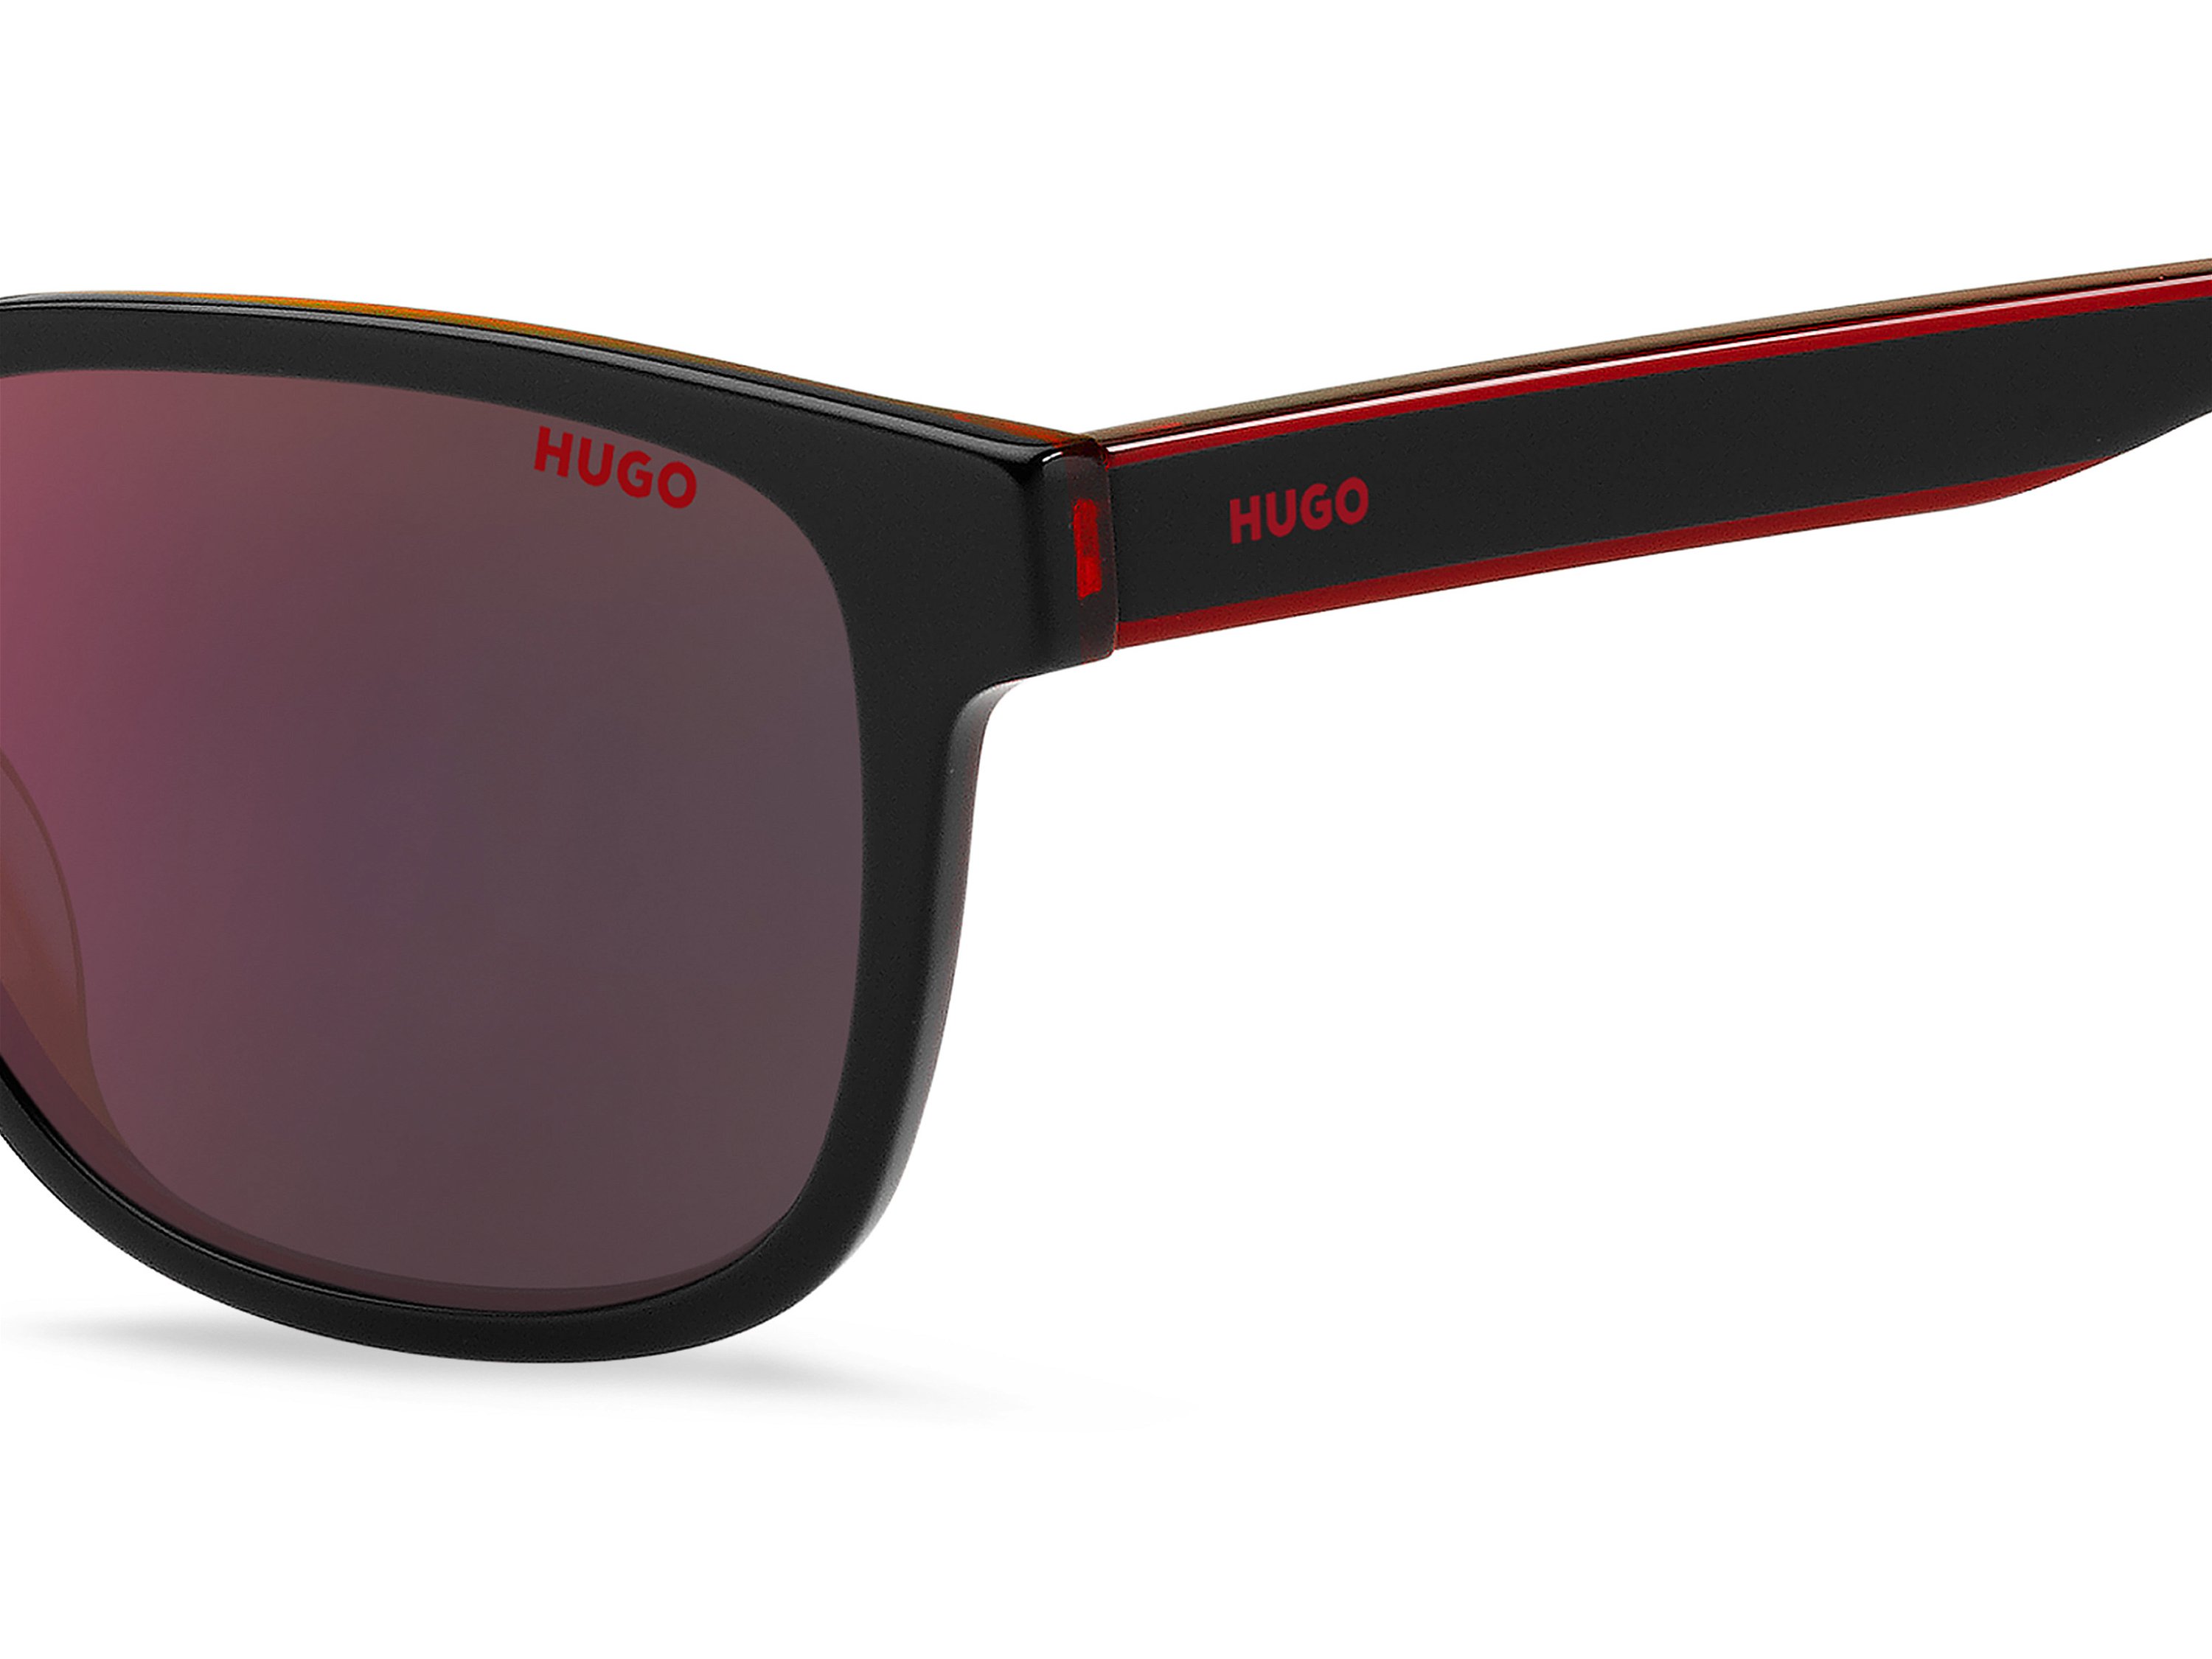 Das Bild zeigt die Sonnenbrille HG1243/S OIT von der Marke Hugo in schwarz/rot.